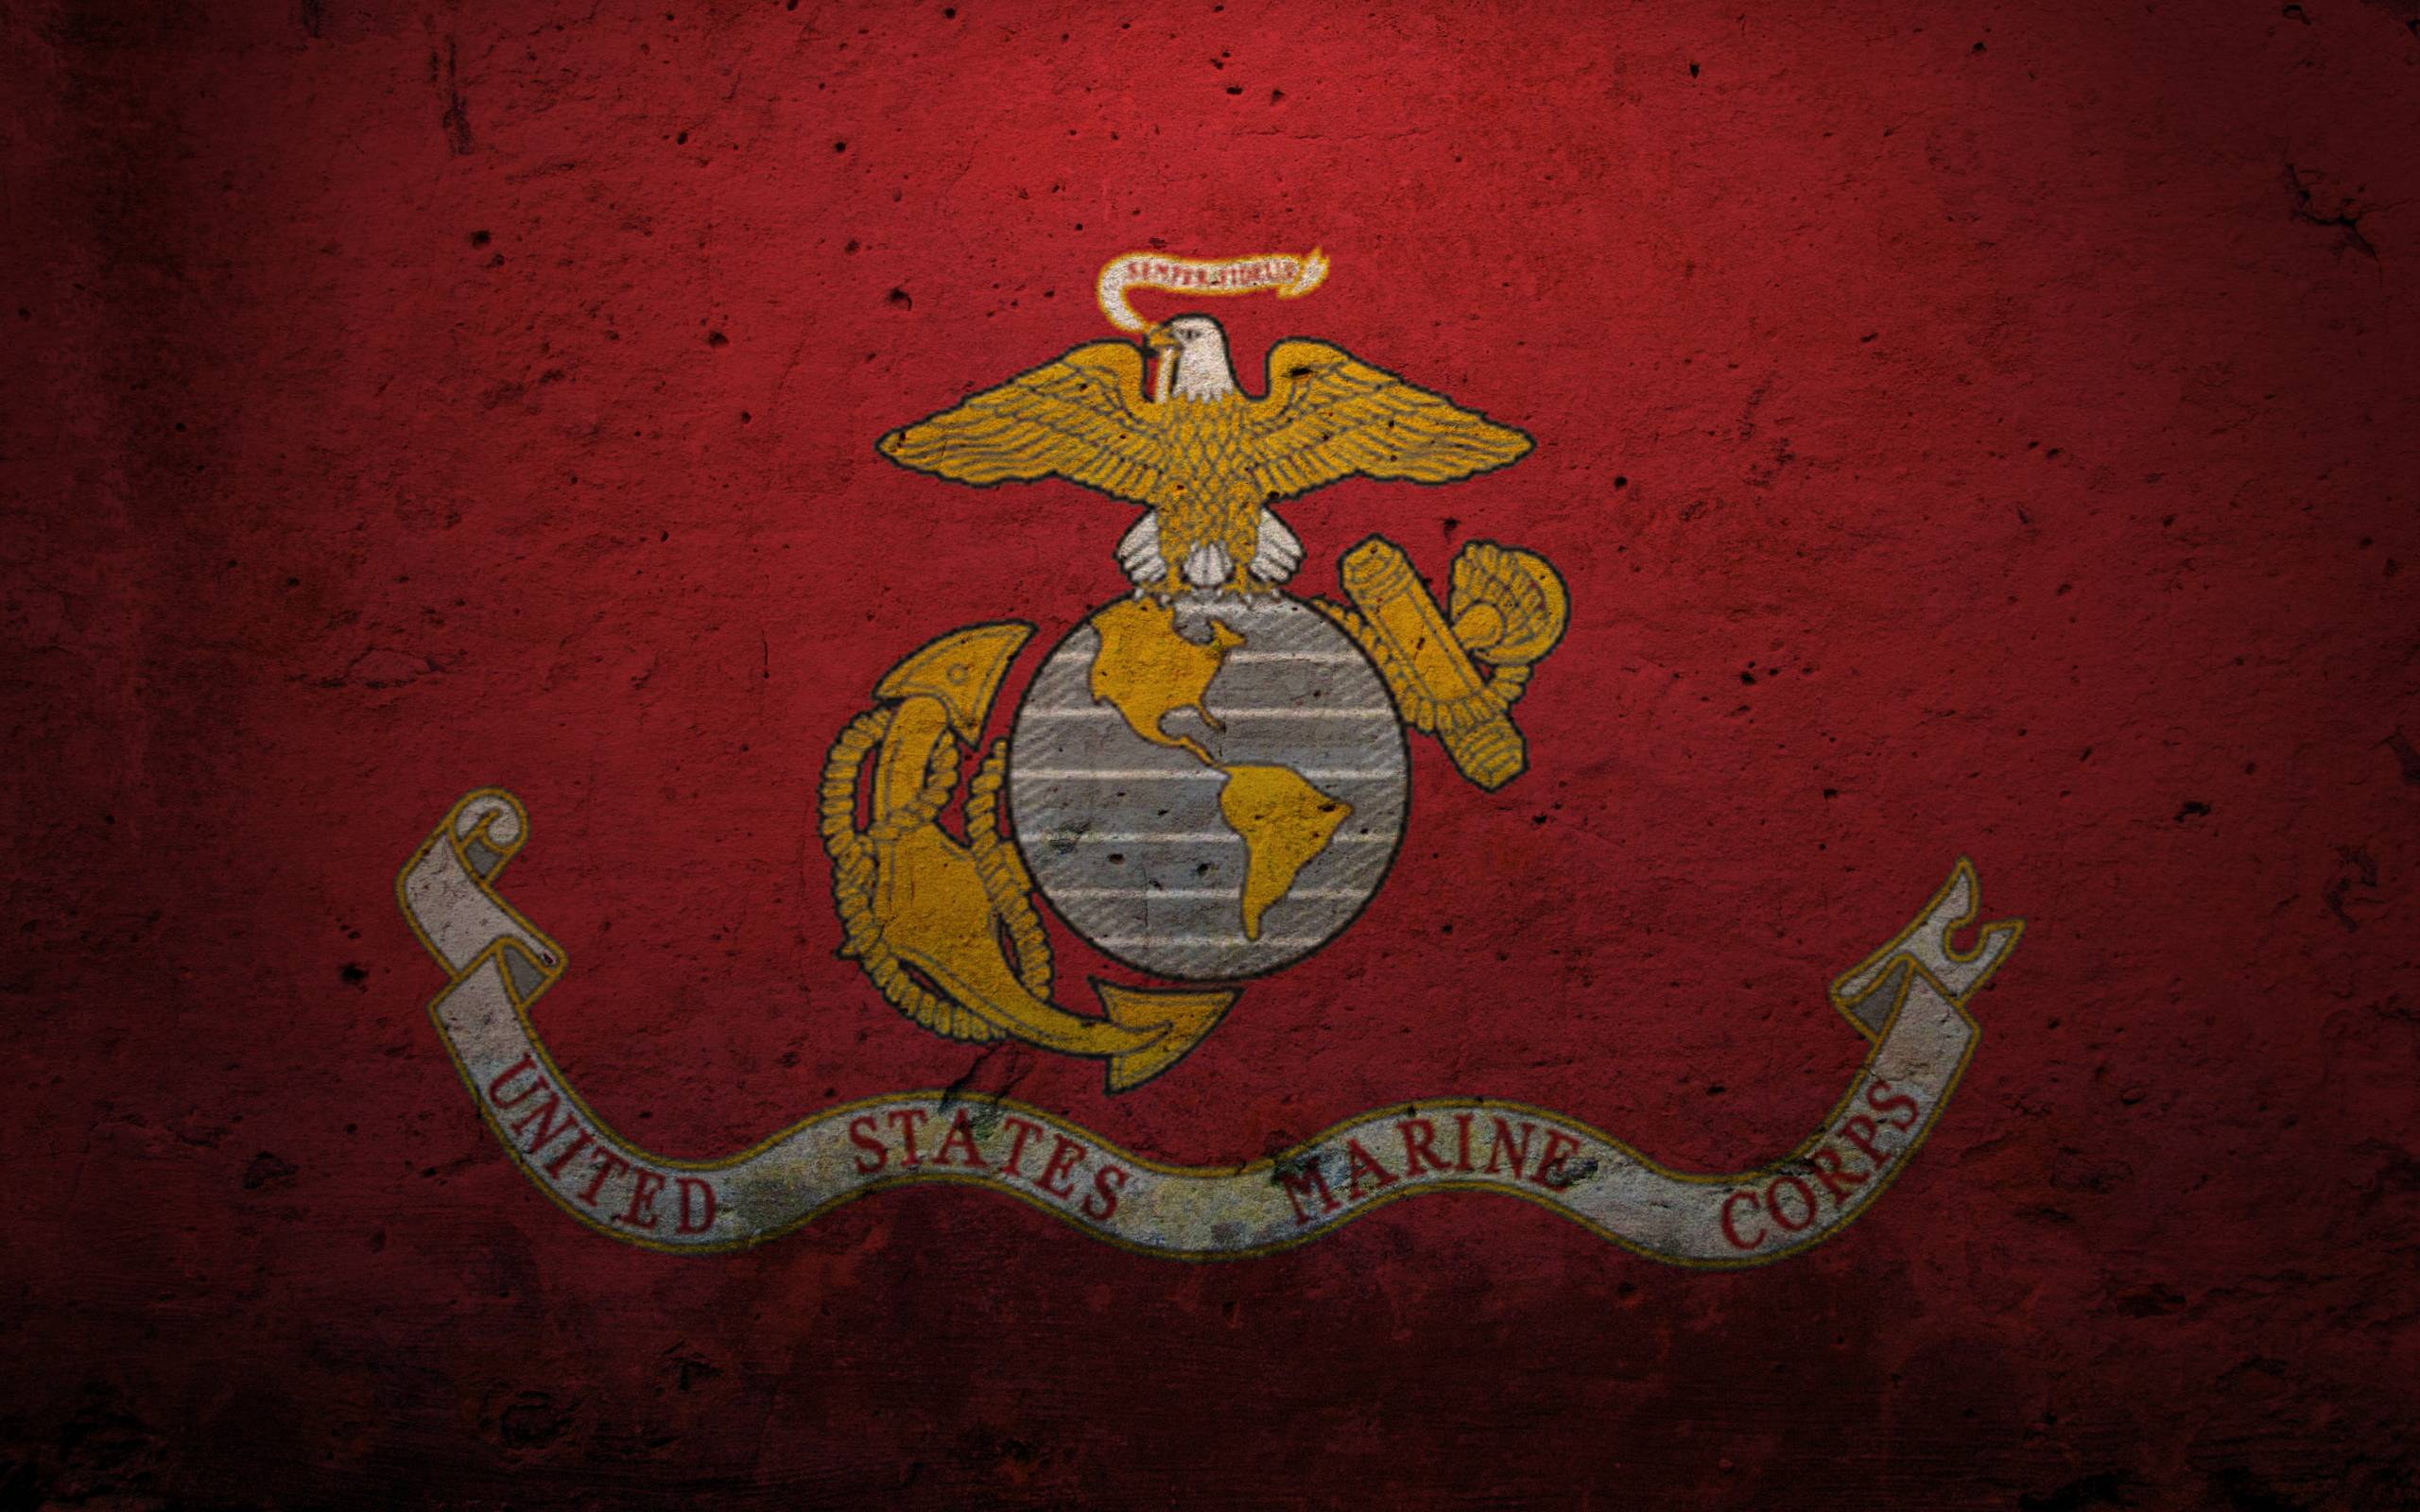 2560x1600 United States Marine Corps Backgrounds